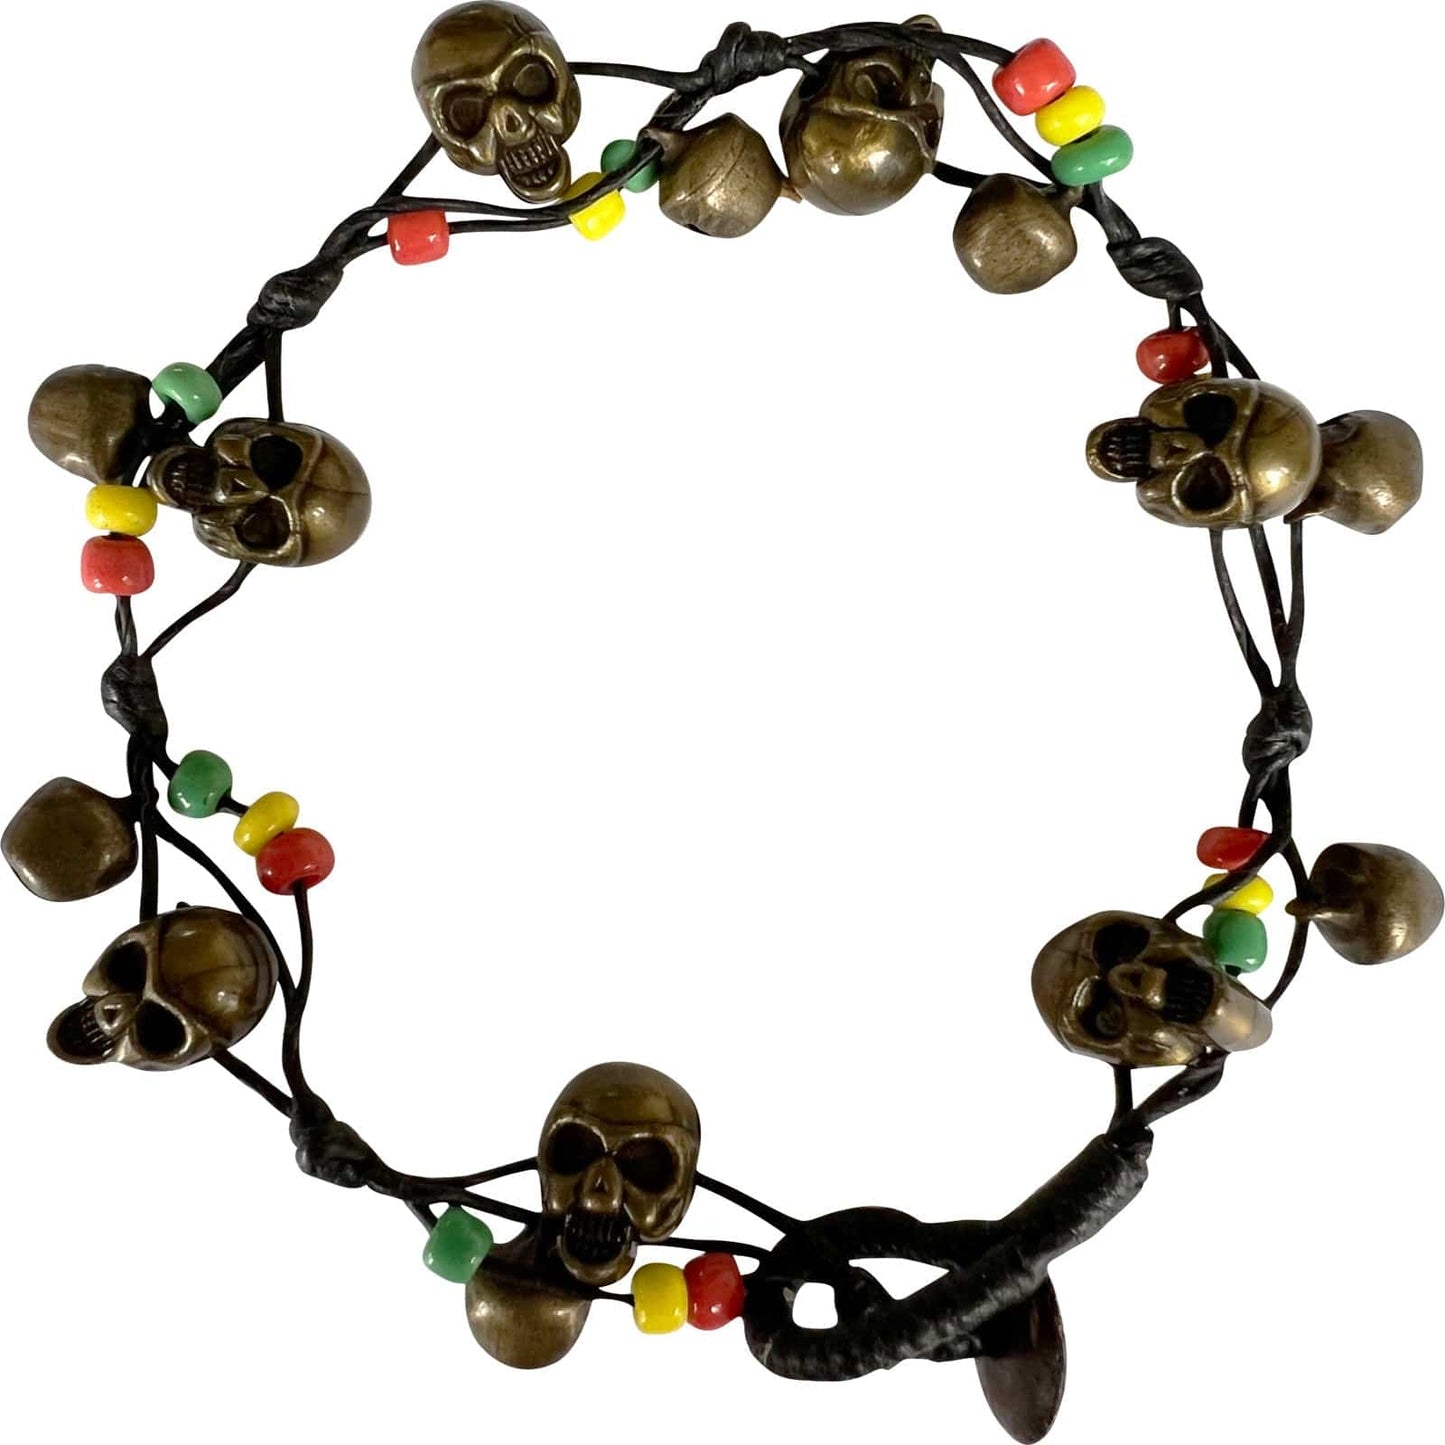 Skull Beads Anklet Black Foot Chain Ankle Bracelet Mens Womens Girls Jewellery